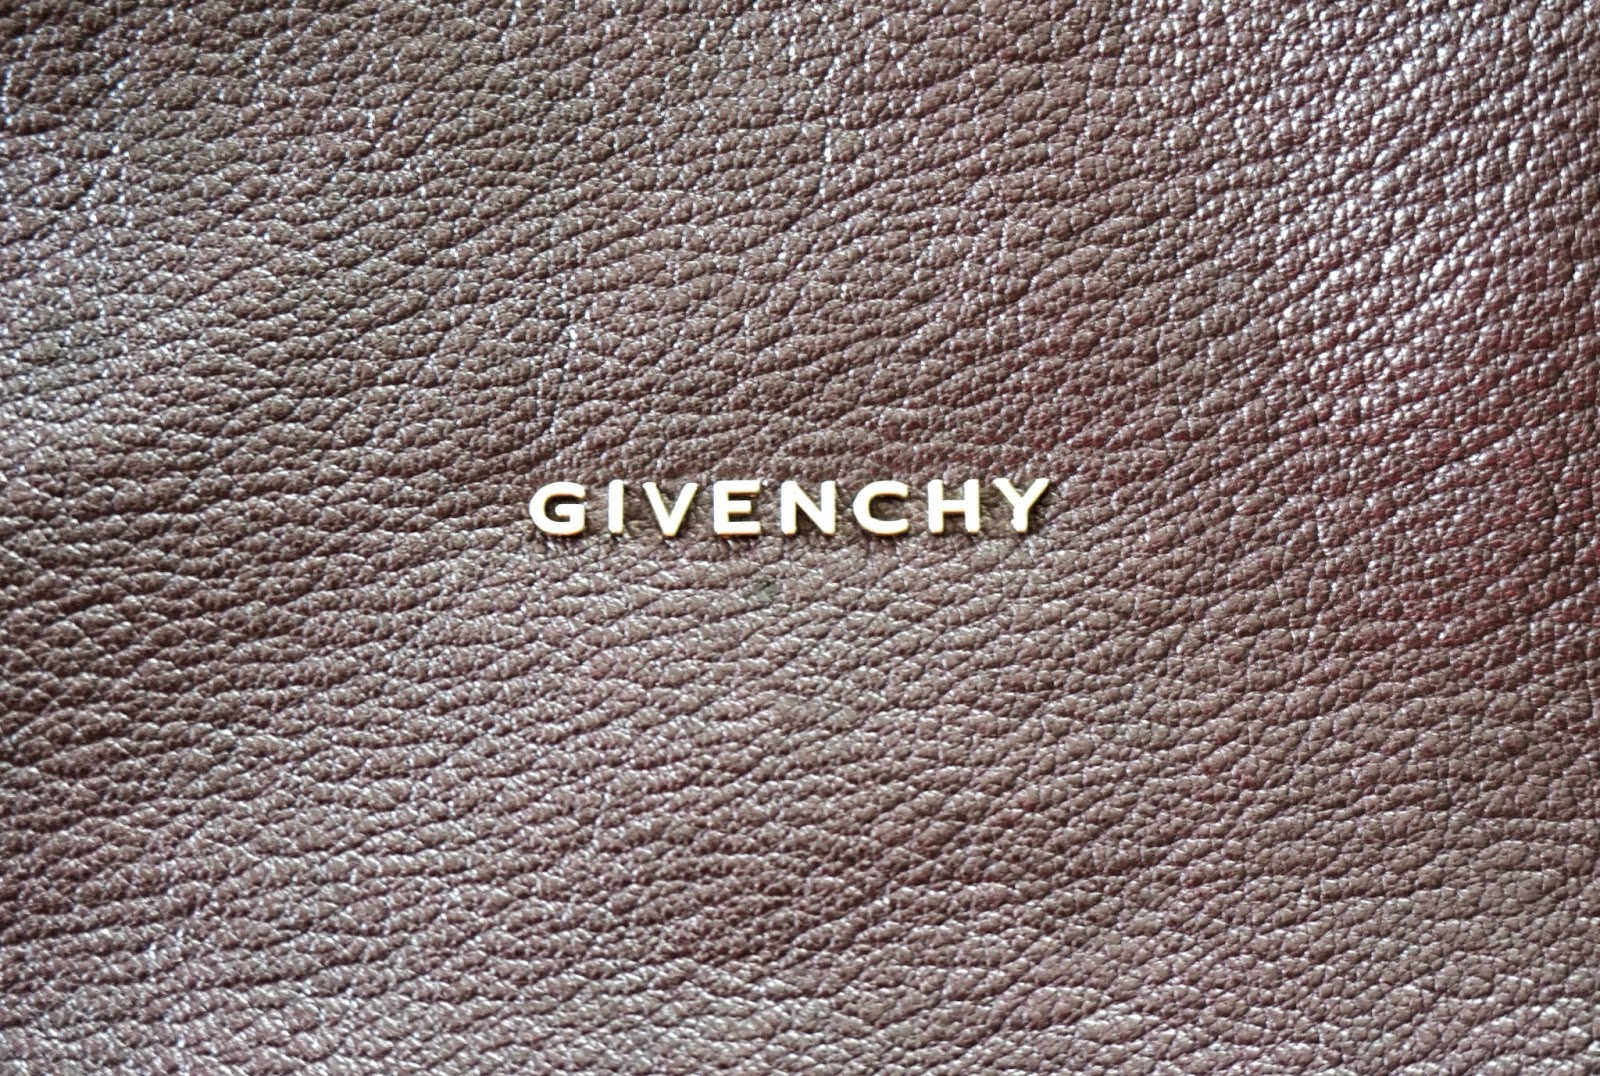 BAG REVIEW: Givenchy Pandora Medium in Aube + Spot A Fake Givenchy ...